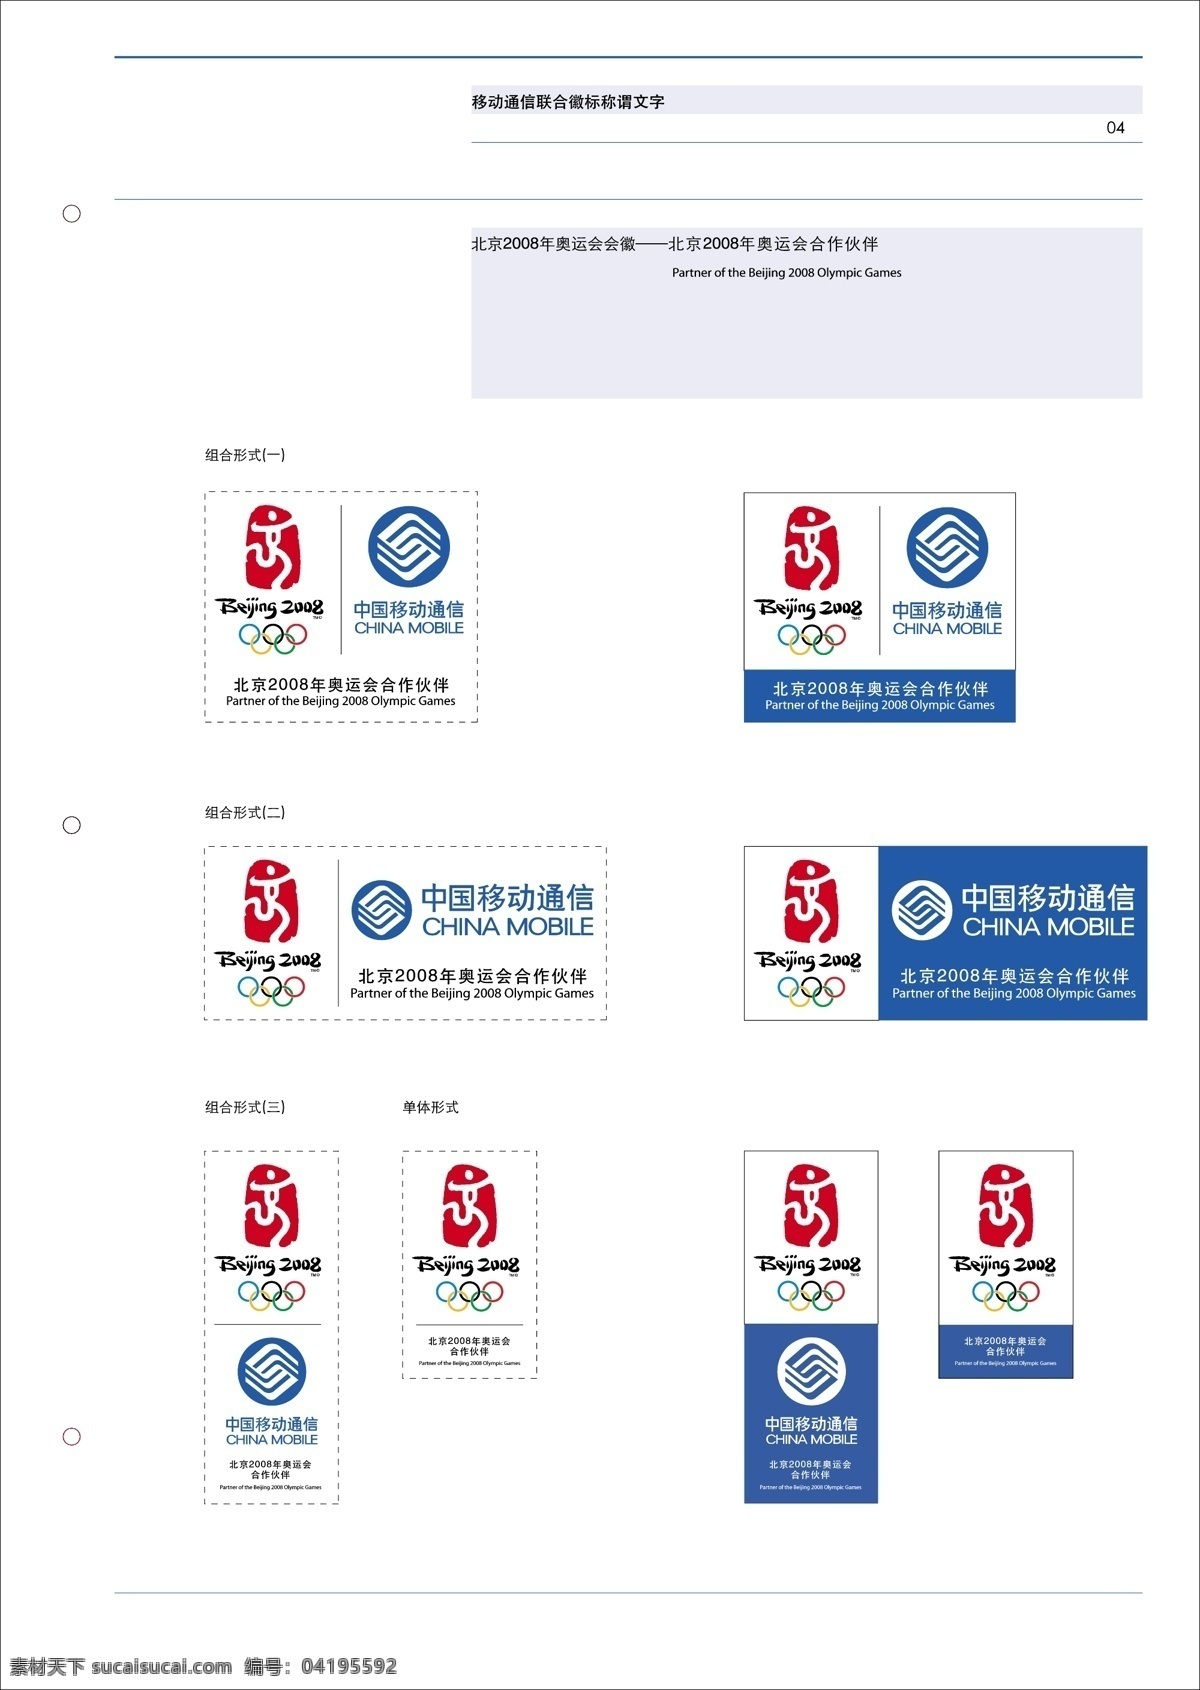 标识标志图标 企业 logo 标志 矢量图库 中国移动 北京 2008 年 奥运会 合作伙伴 vi 中国移动通信 组合 标准 建筑家居